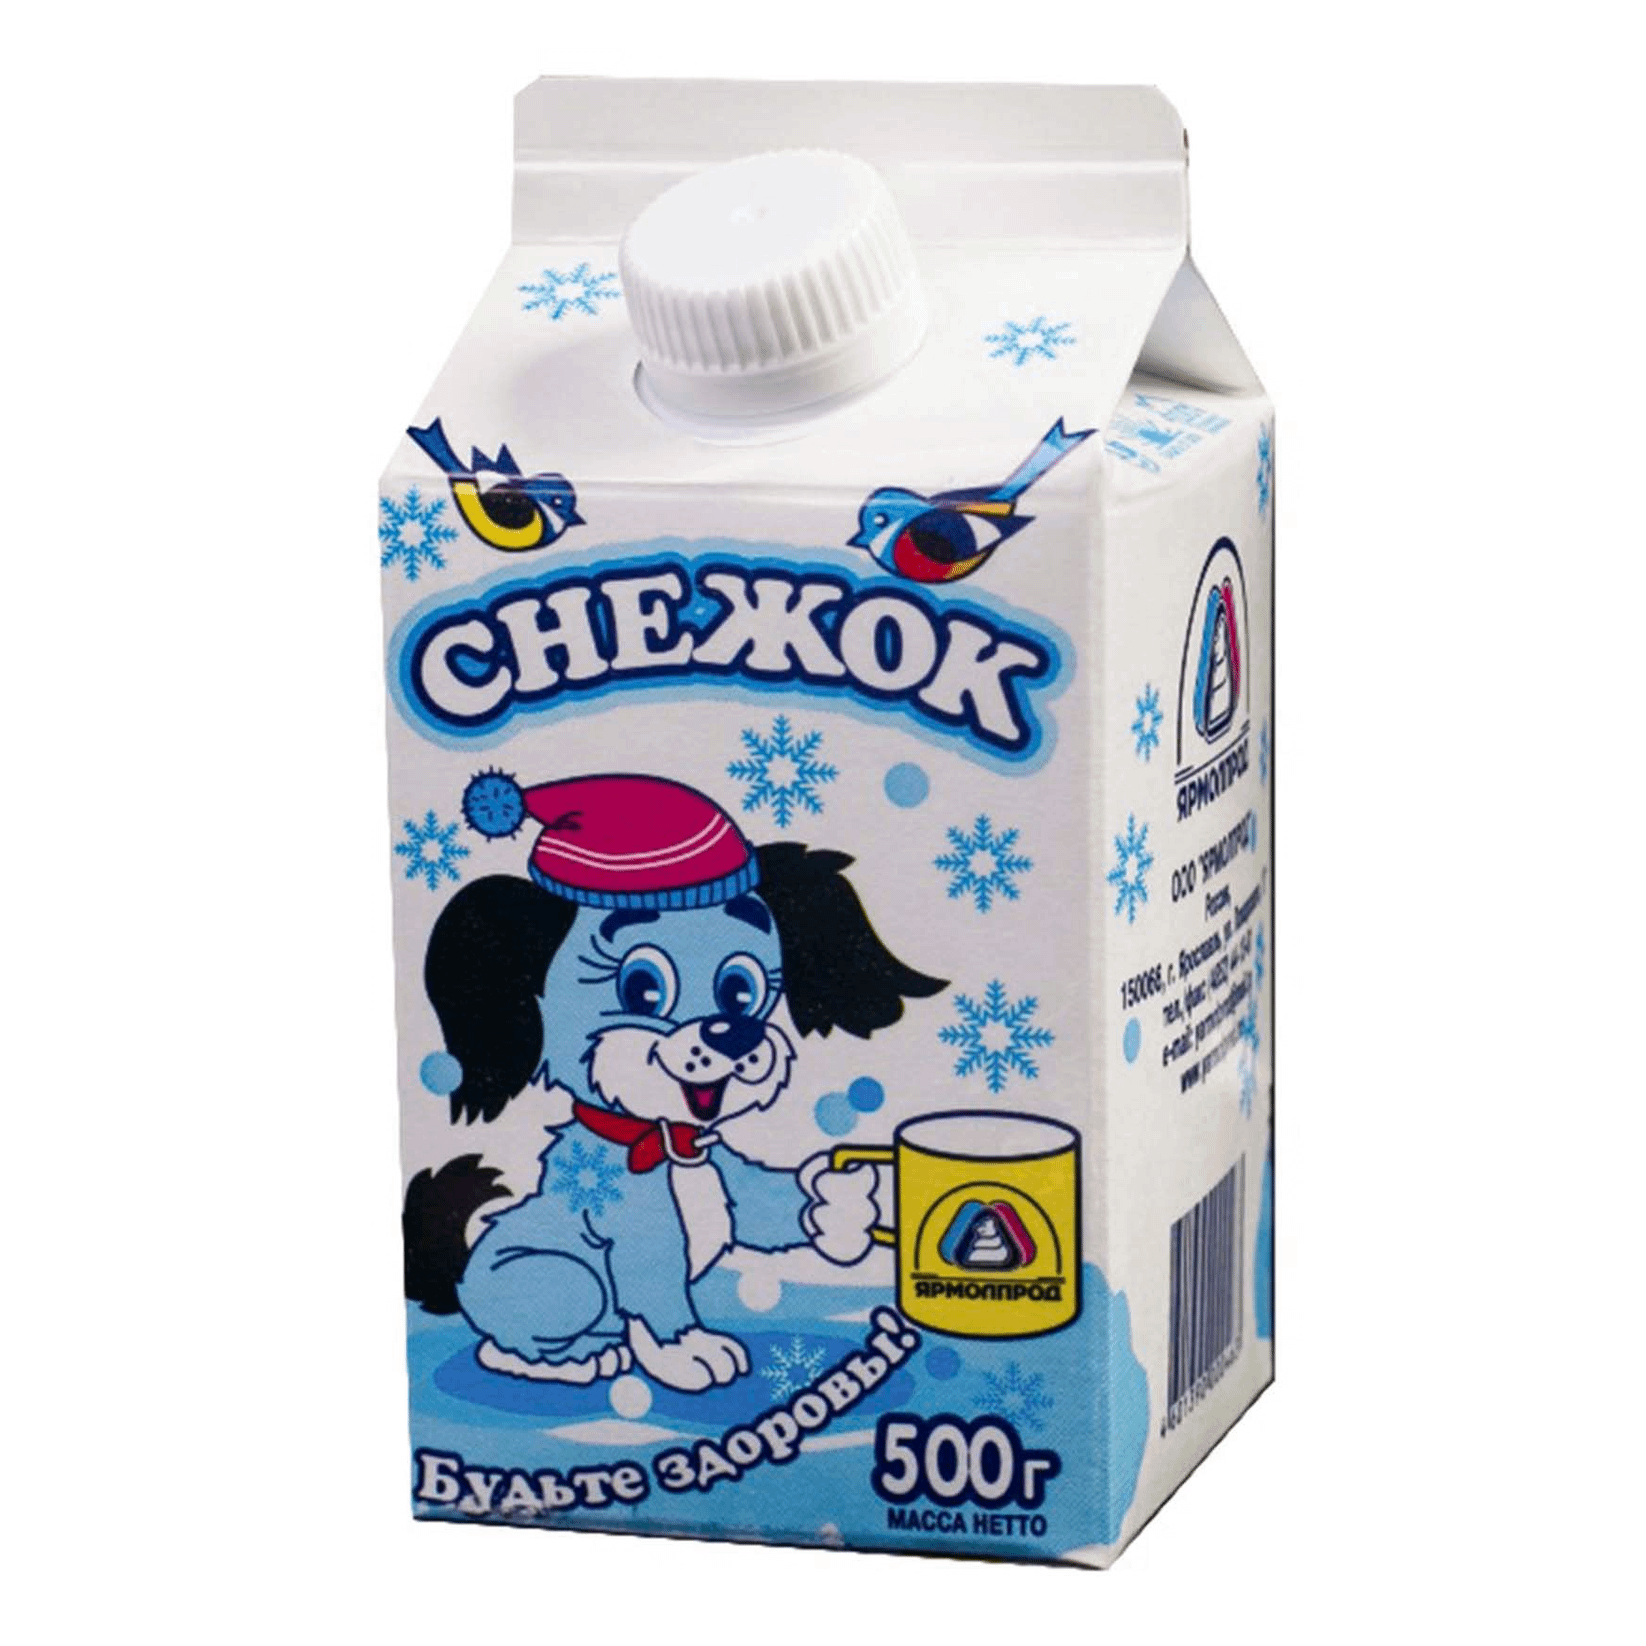 Снежок Ярмолпрод. Снежок 2,5. Ярмолпрод напиток.снежок 2,5% йогурт.500г. Снежок молочный продукт.